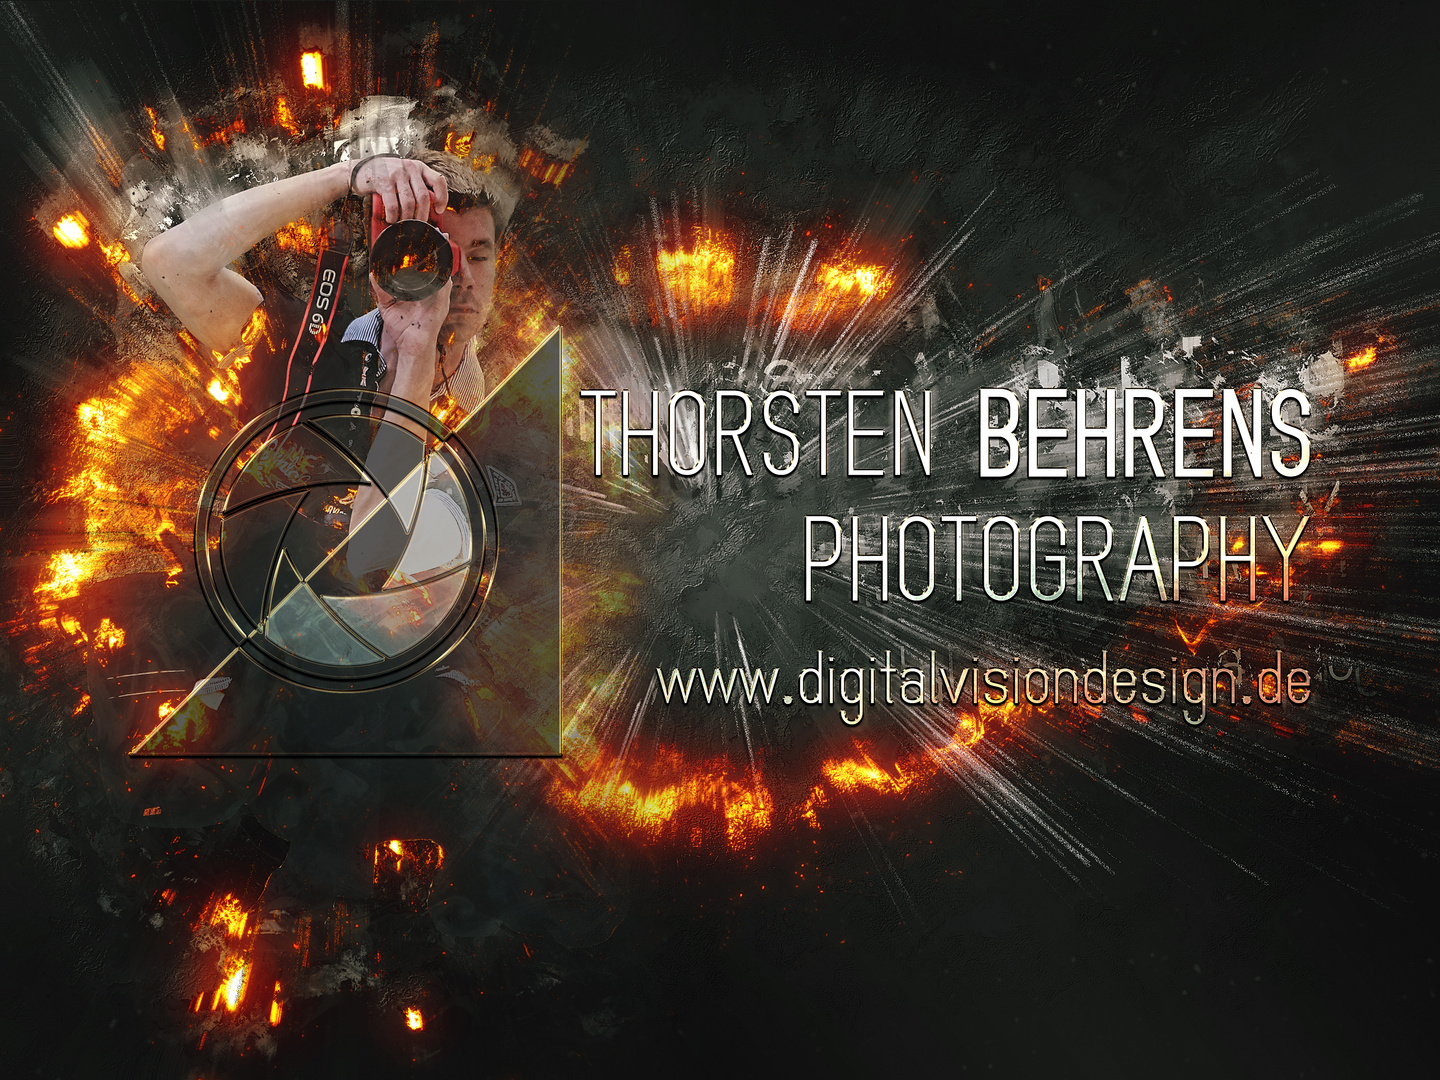 Thorsten Behrens Photography - MITTENDRIN... STATT NUR DABEI